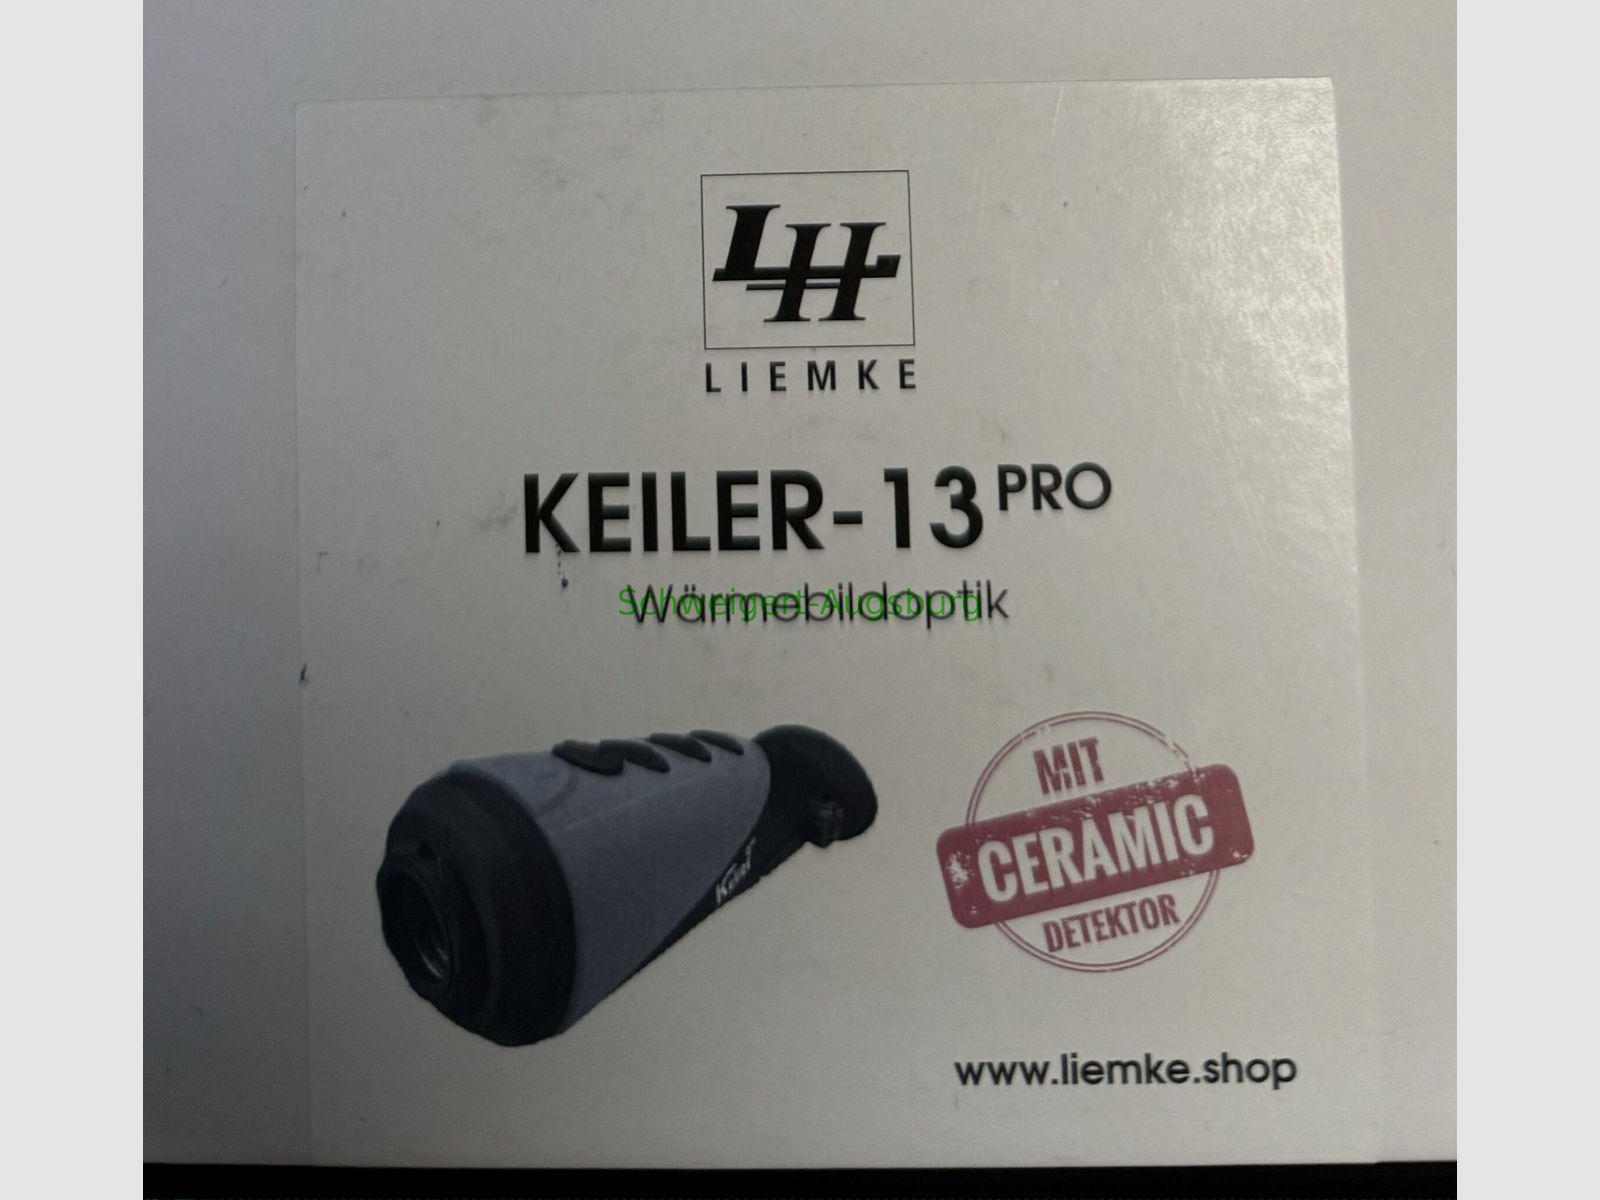 Liemke	 Keiler-13 PRO